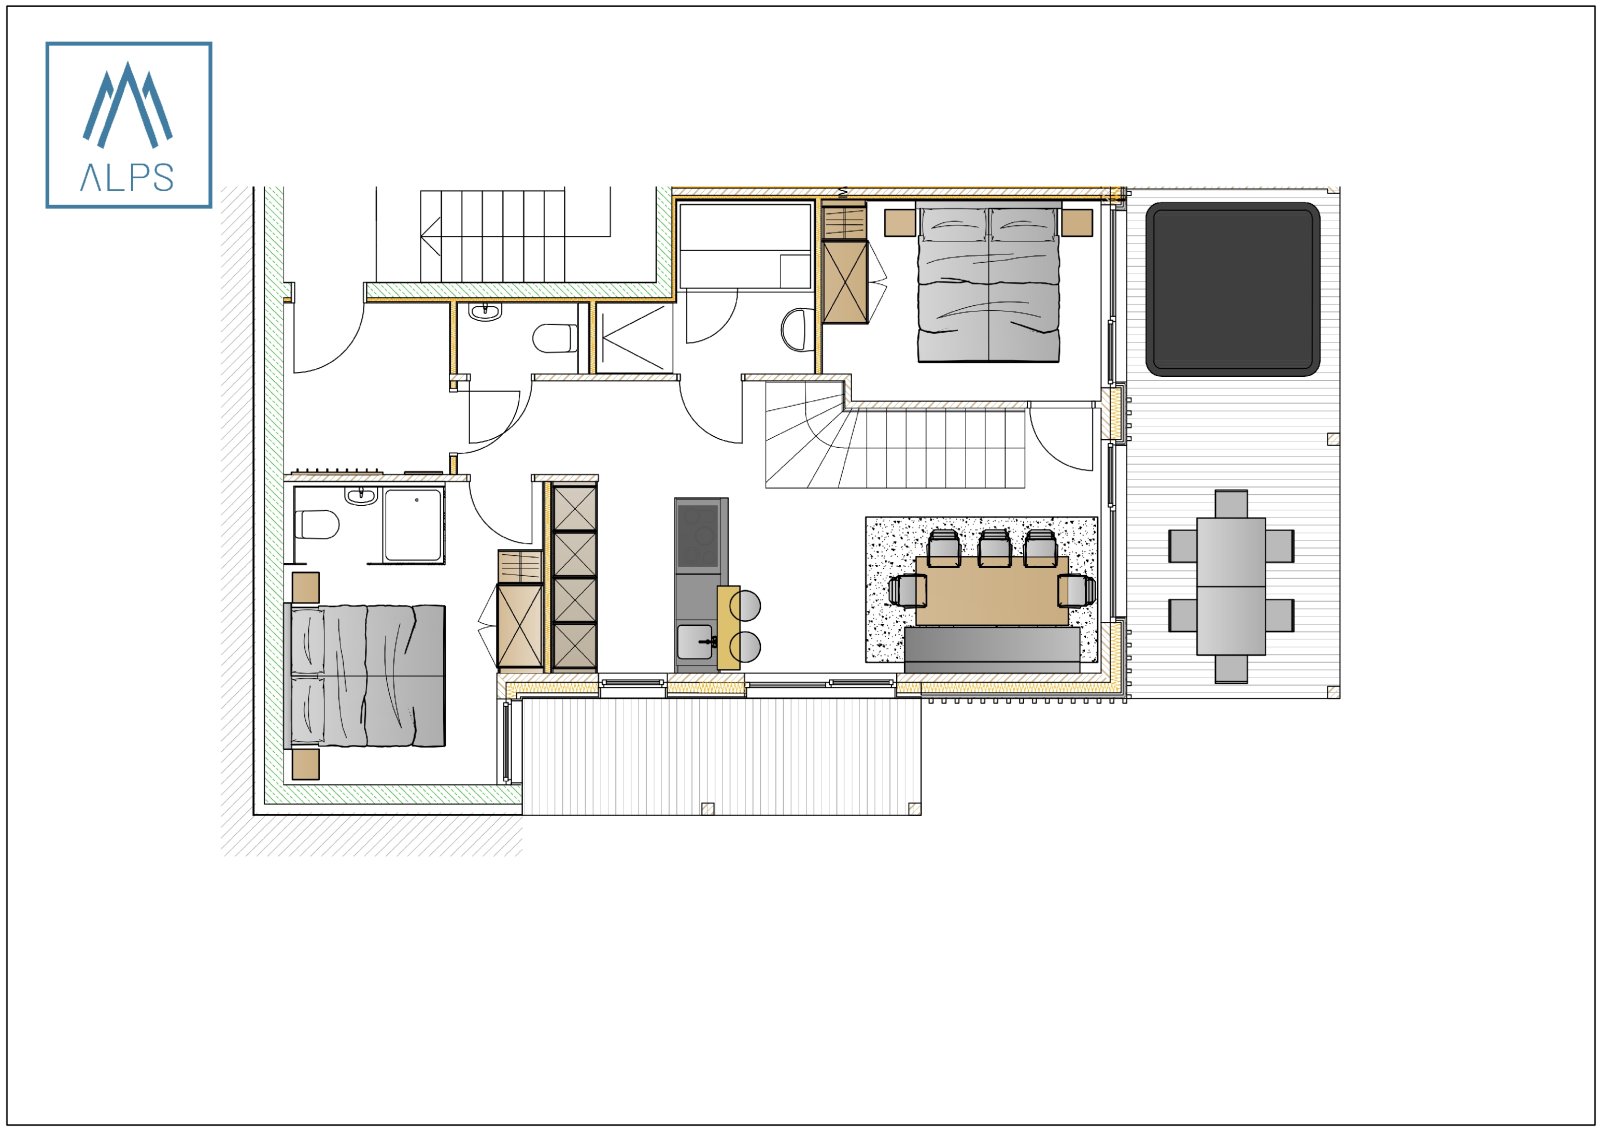 Galériás Superior apartman szaunával, pezsgőfürdővel - 95 m2 / 4 fős - földszinti alaprajz